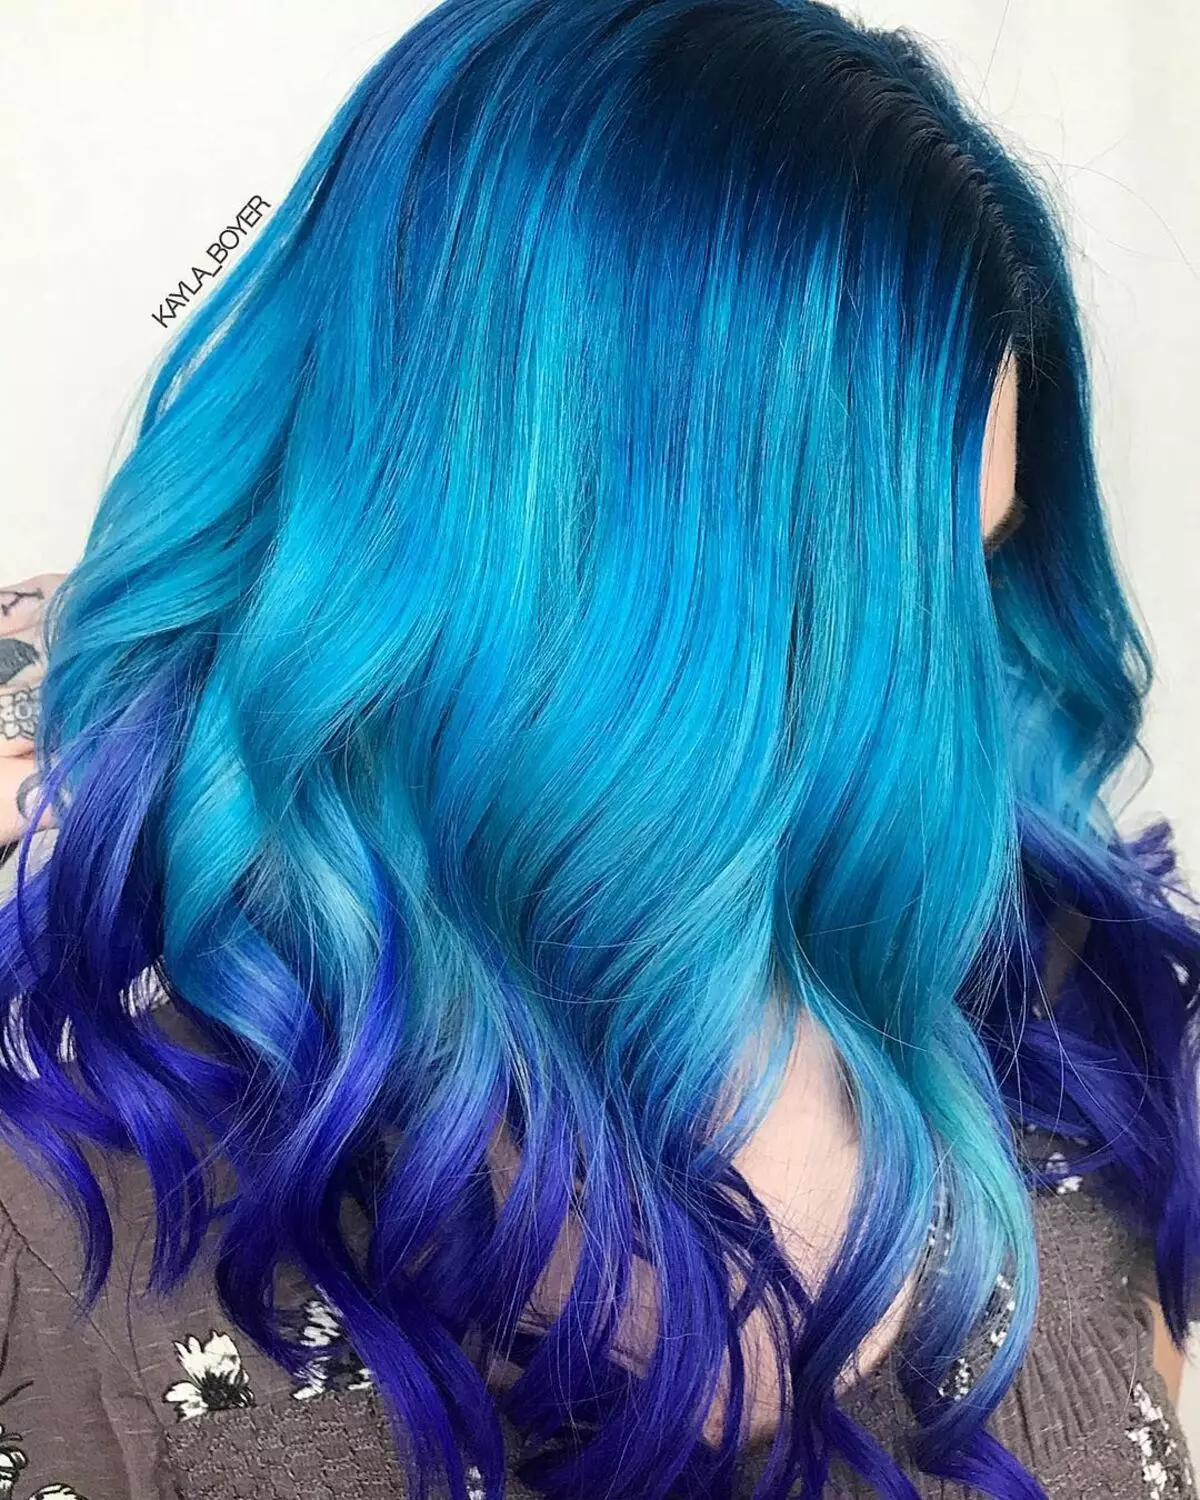 رنگ مو آبی: مرور کلی رنگ های مقاوم در برابر رنگ با سوزن آبی، از آبی روشن به سایه های سیاه و سفید 5402_2